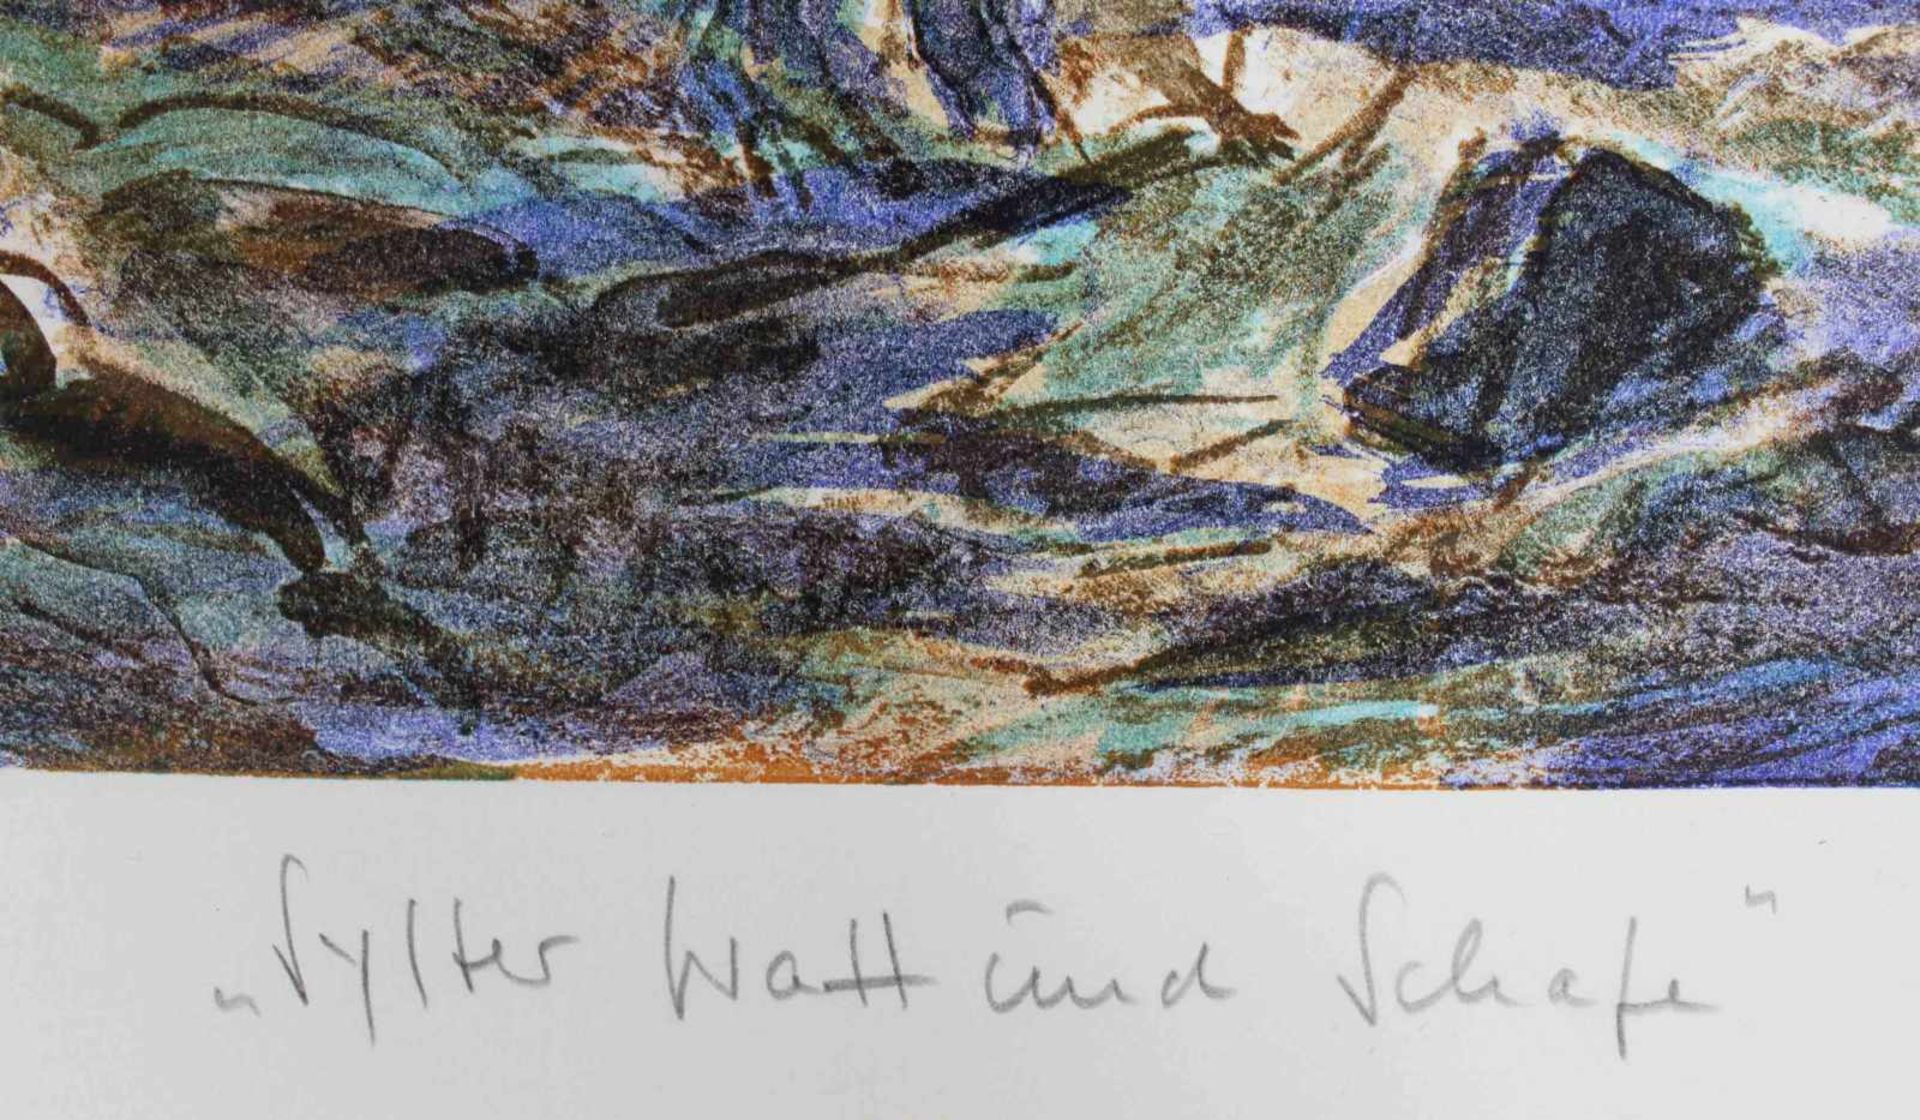 Helmut STURM (1932 - 2008). "Sylter Watt und Schafe" 1992. 50 cm x 65 cm das Blatt. Lithographie auf - Bild 4 aus 8